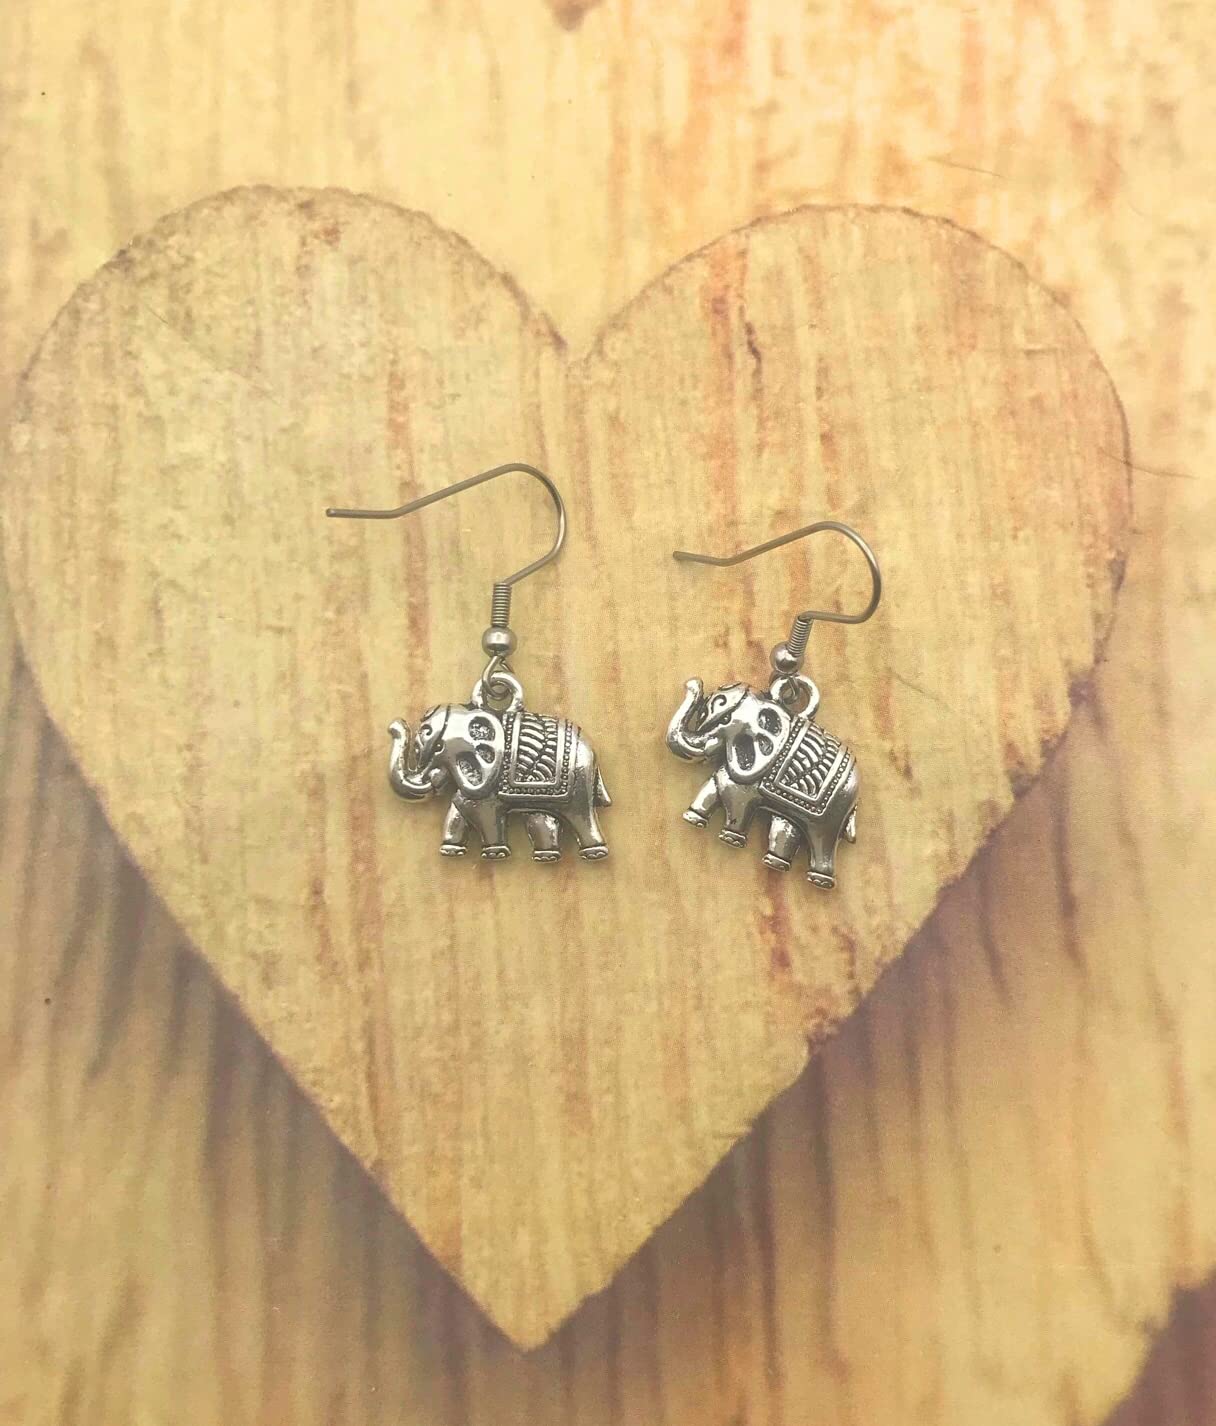 Silver Elephant Earrings on Wooden Display by Scott D Jewelry Designs